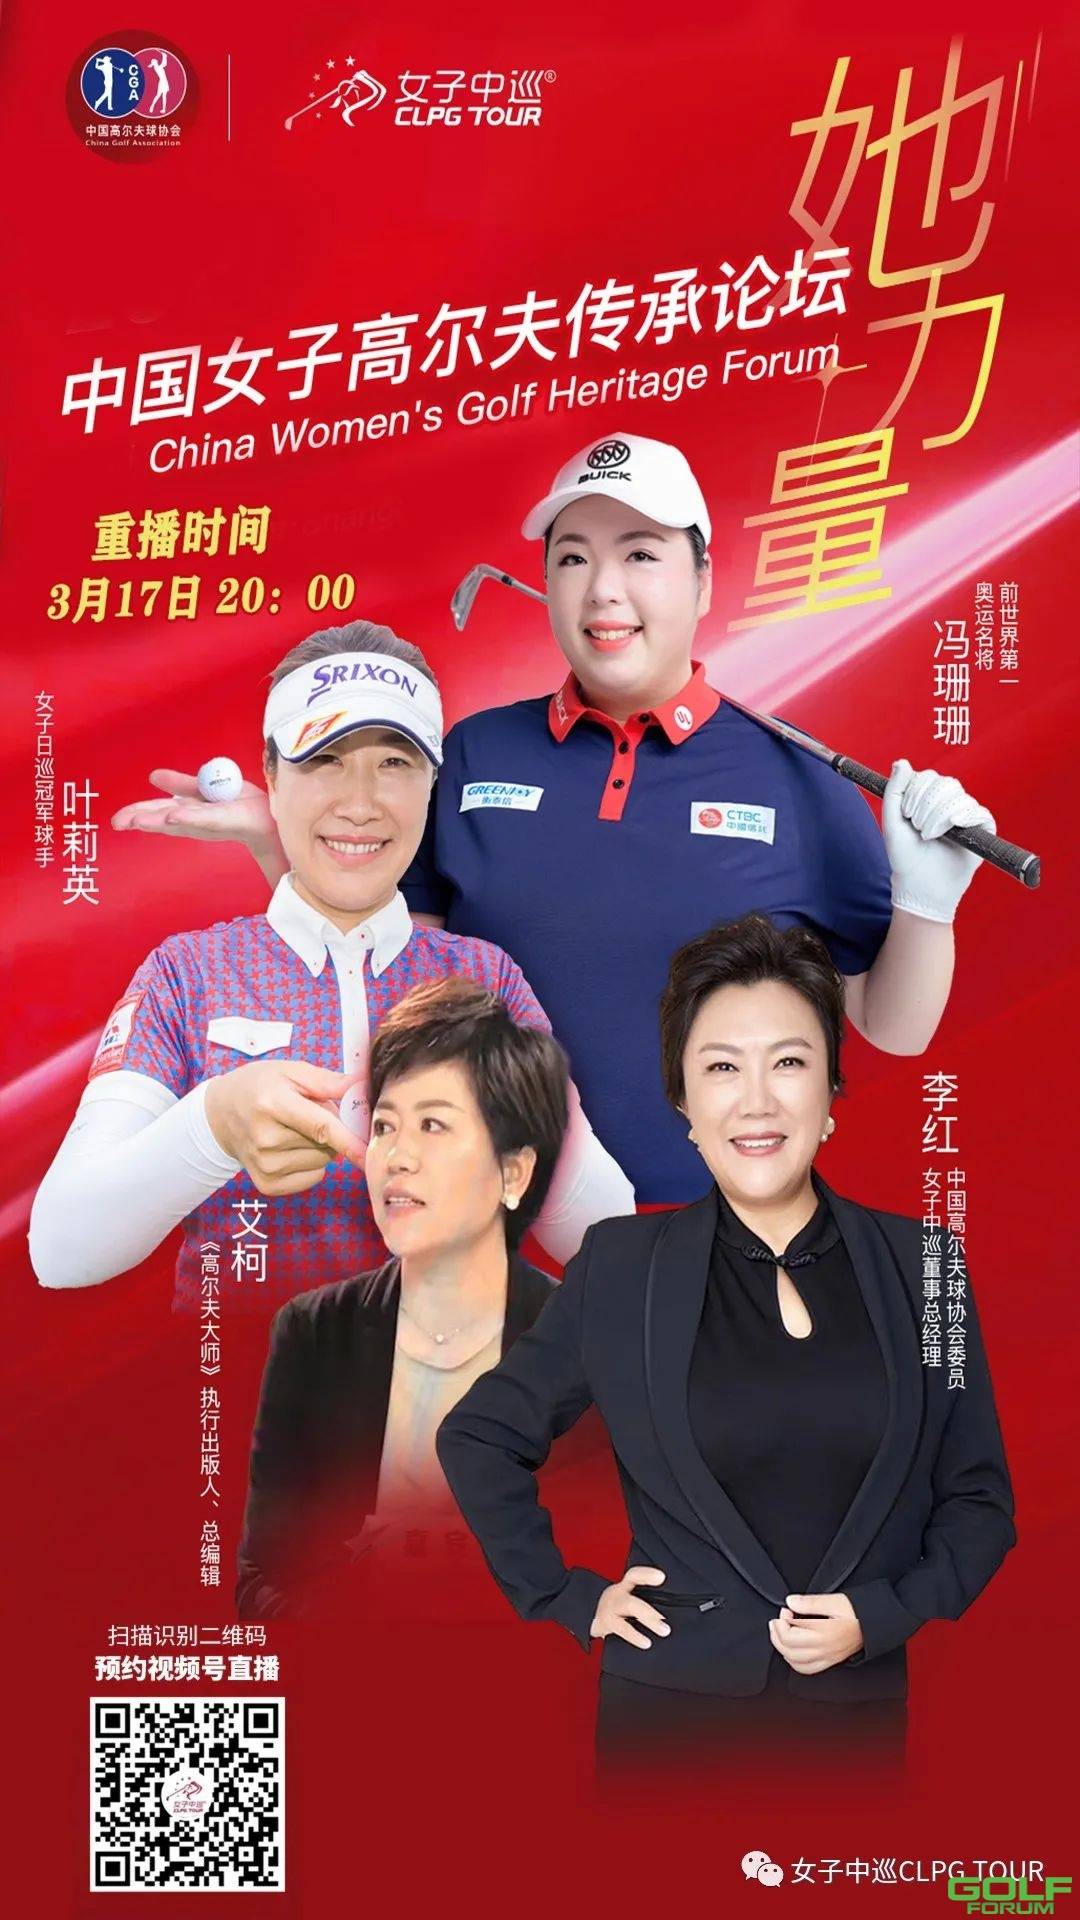 明日重播|中国女子高尔夫传承论坛精彩上线